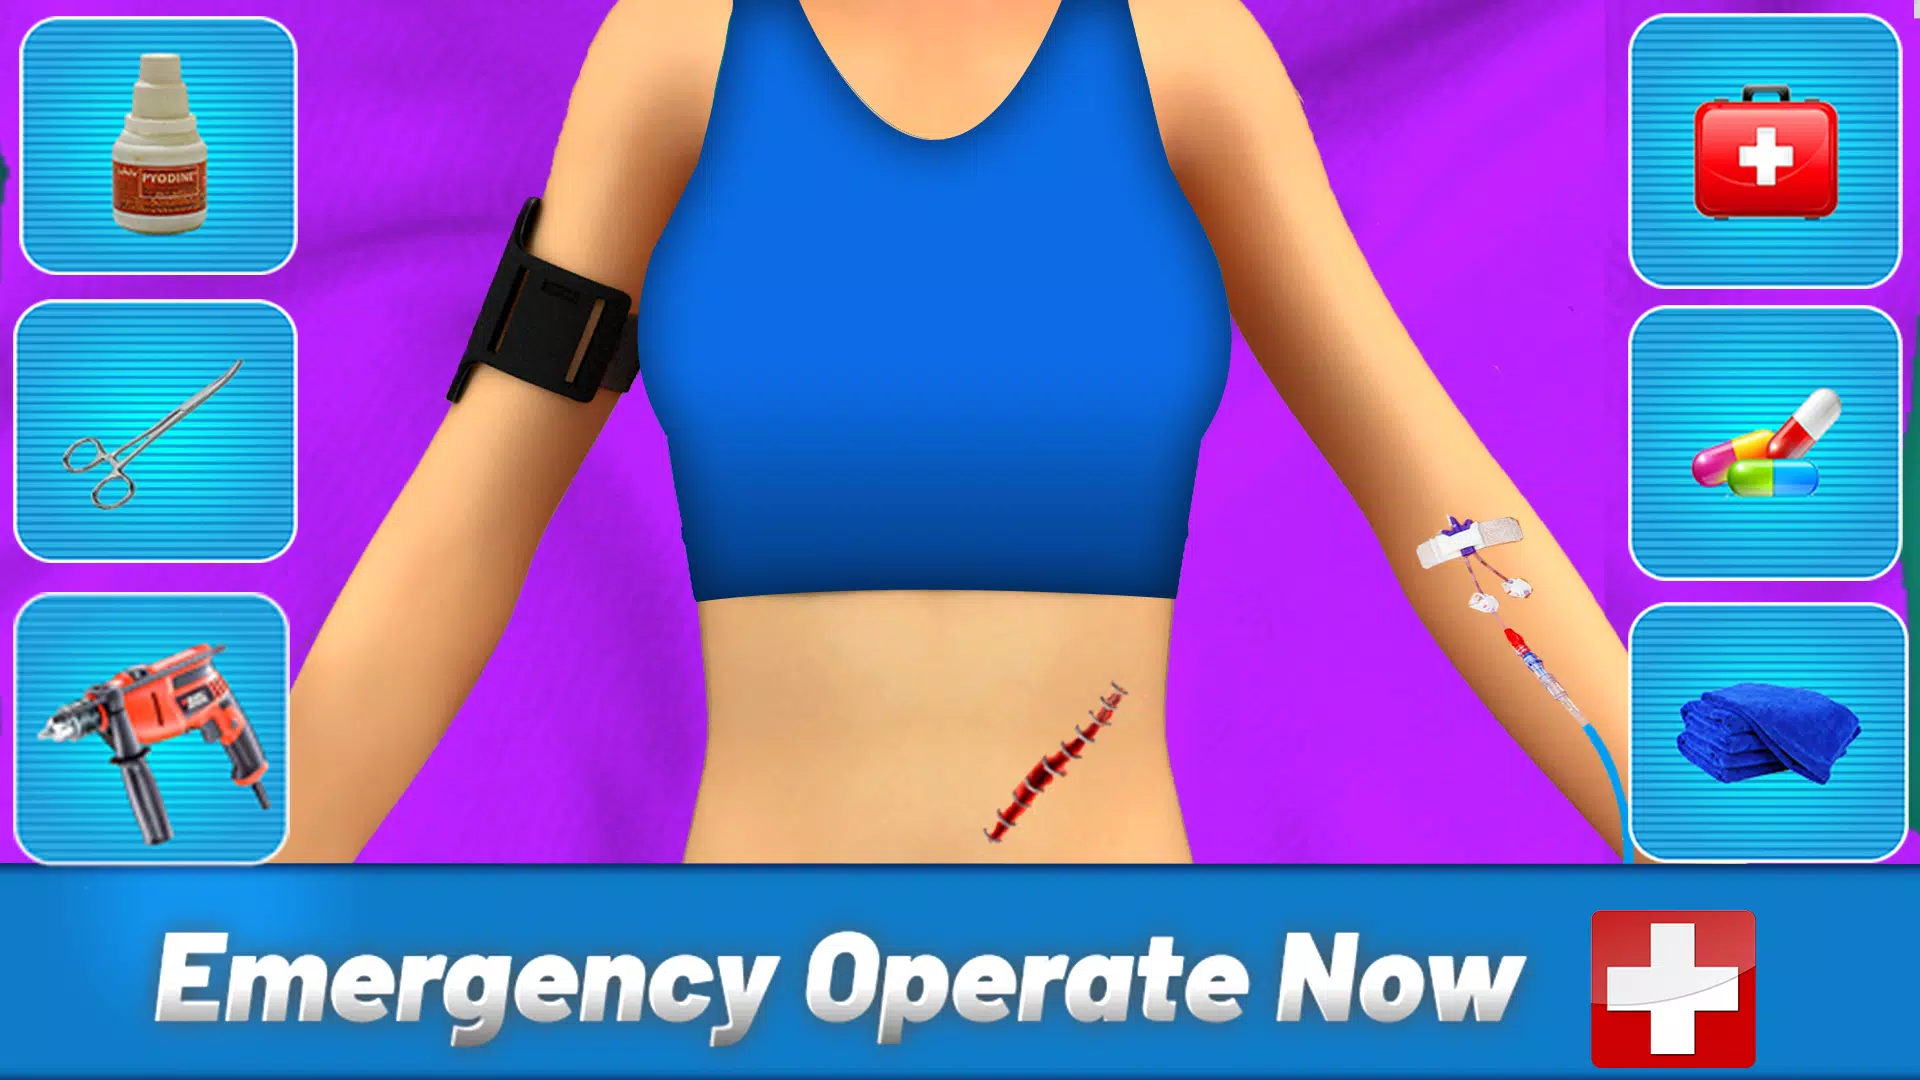 OPERATE NOW! HEART SURGERY jogo online gratuito em